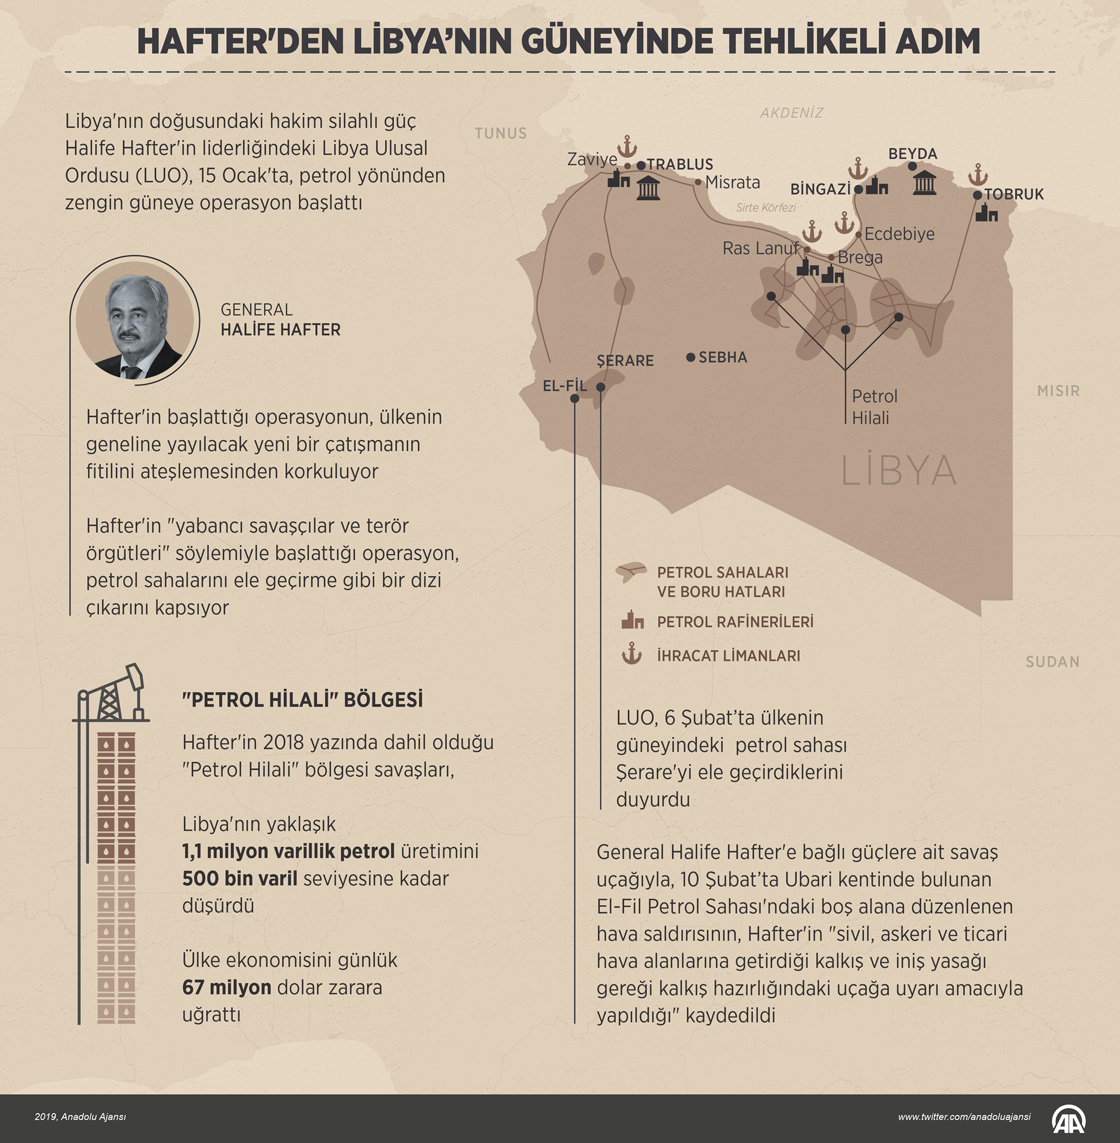  Hafter'den Libya'nın güneyinde tehlikeli adım